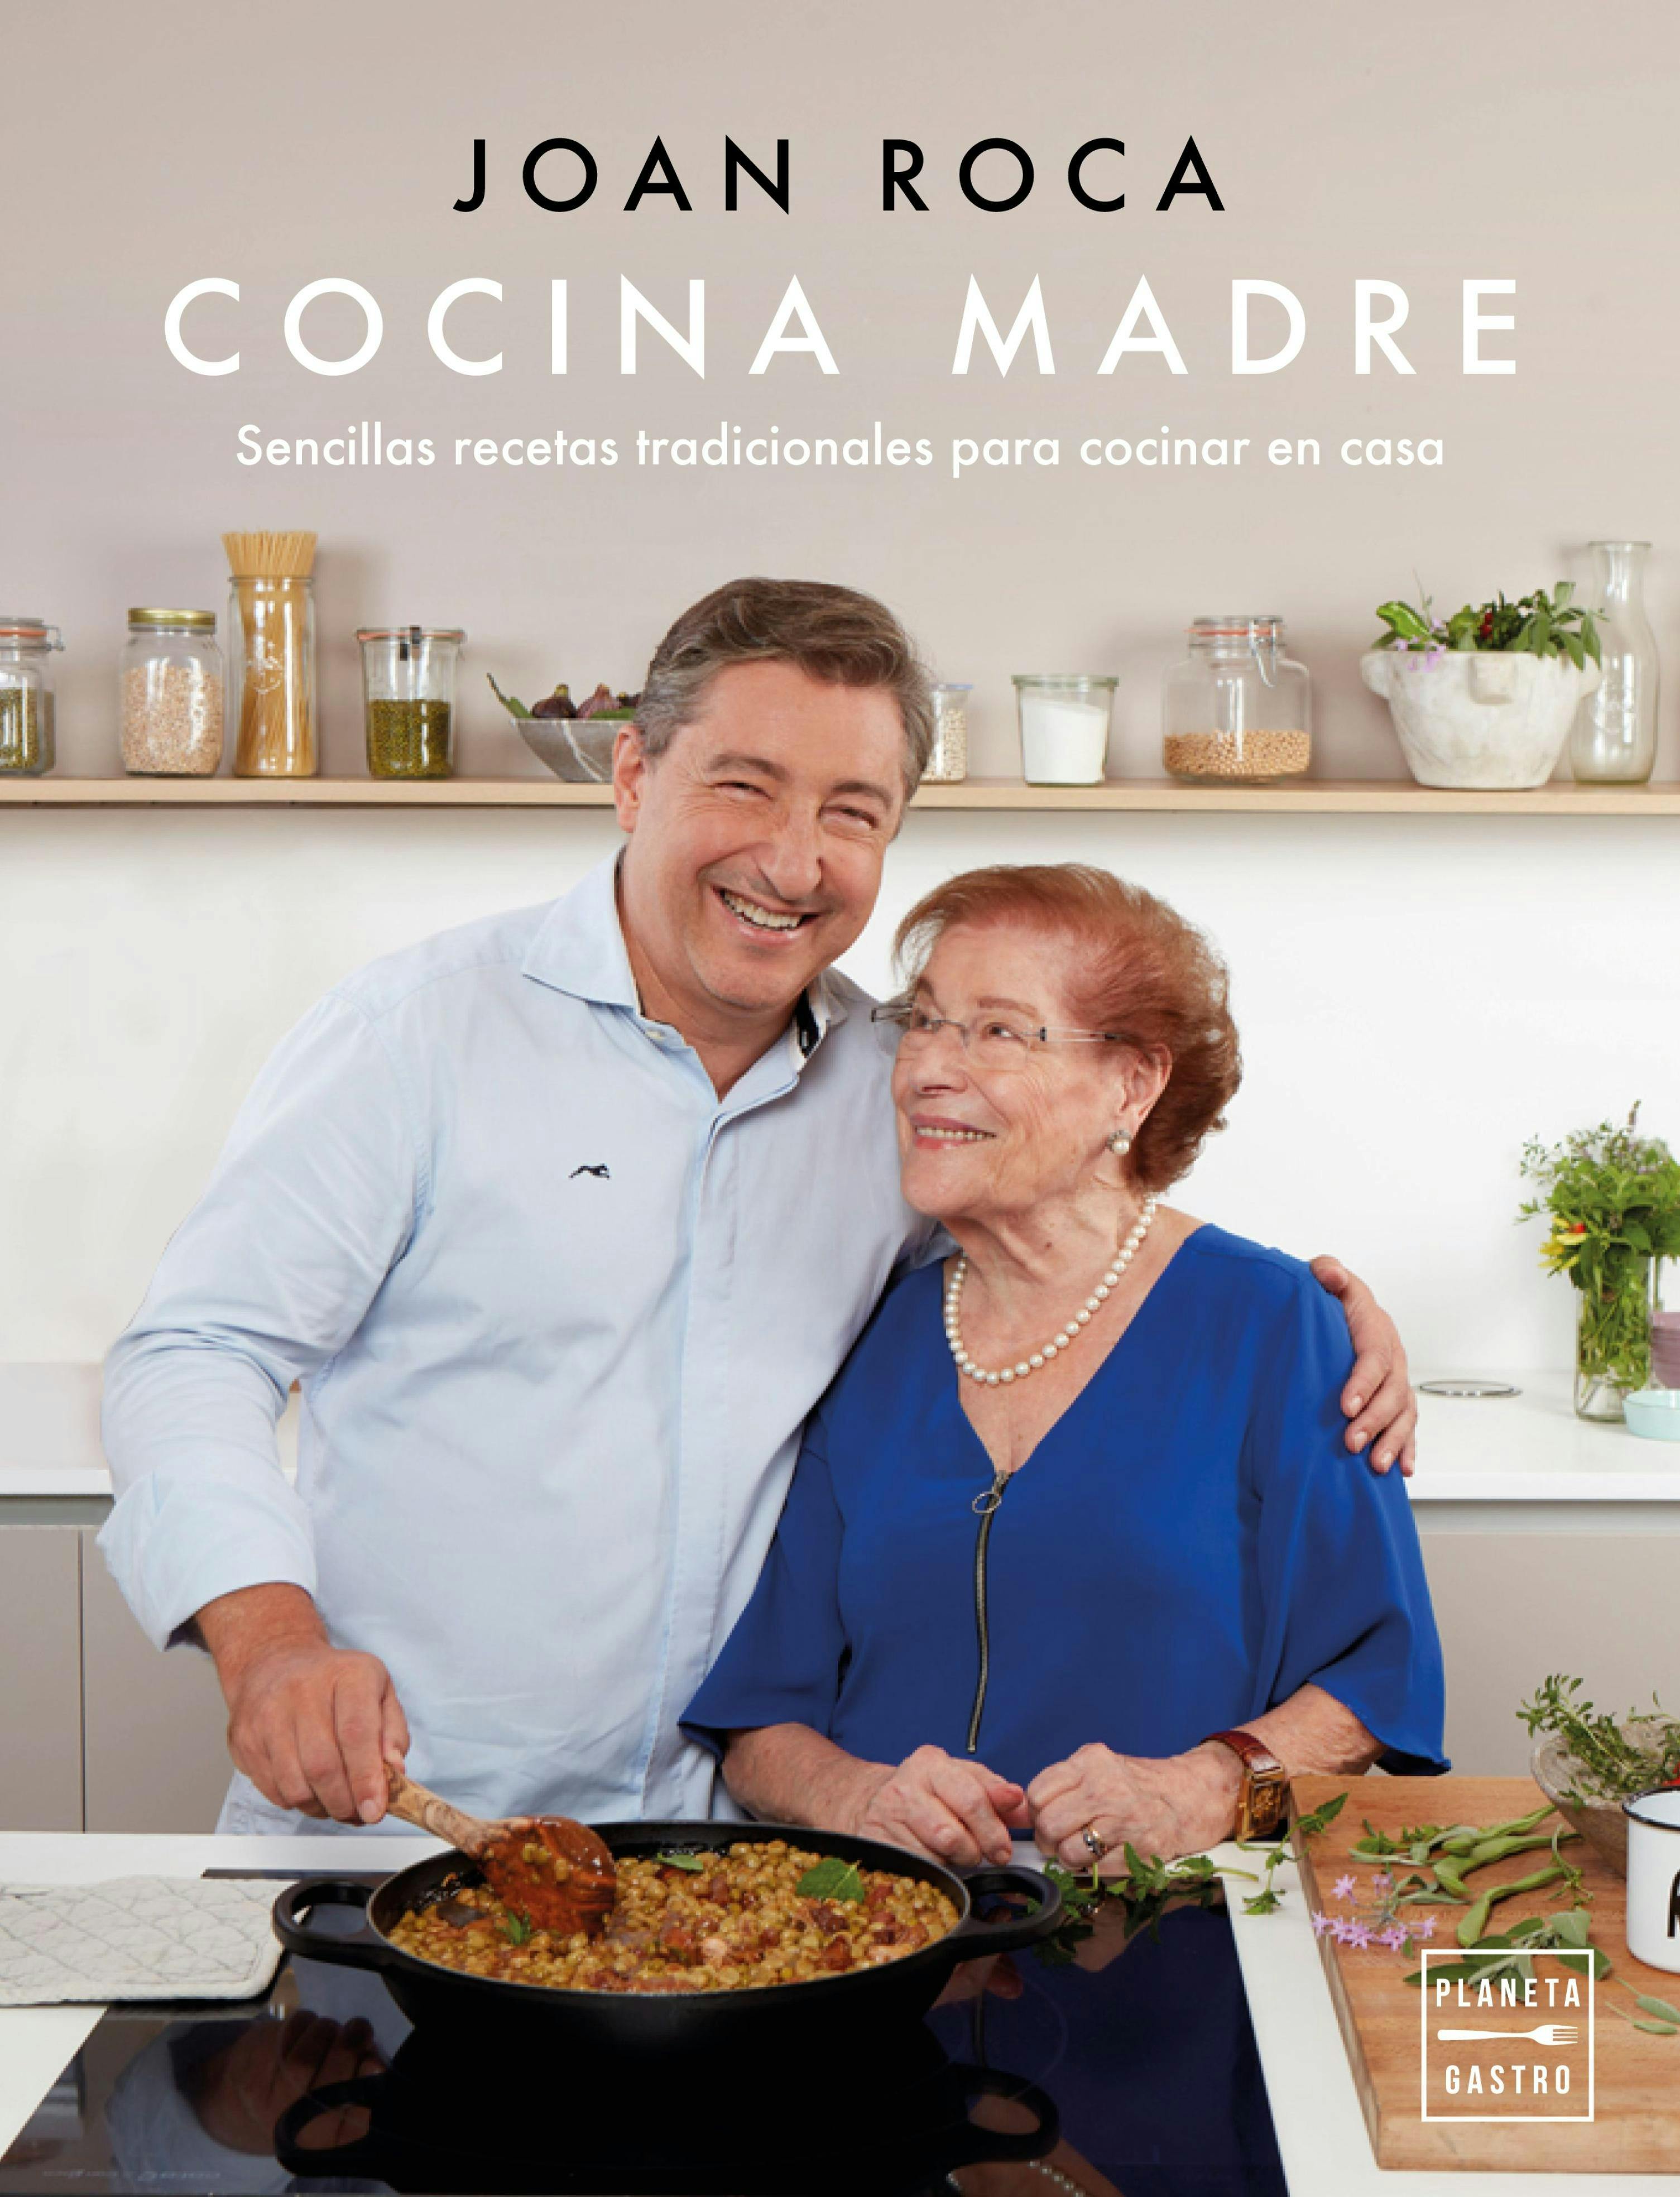 Cocina madre: Recetas sencillas y tradicionales para cocinar en casa - Joan Roca, Salvador Brugués